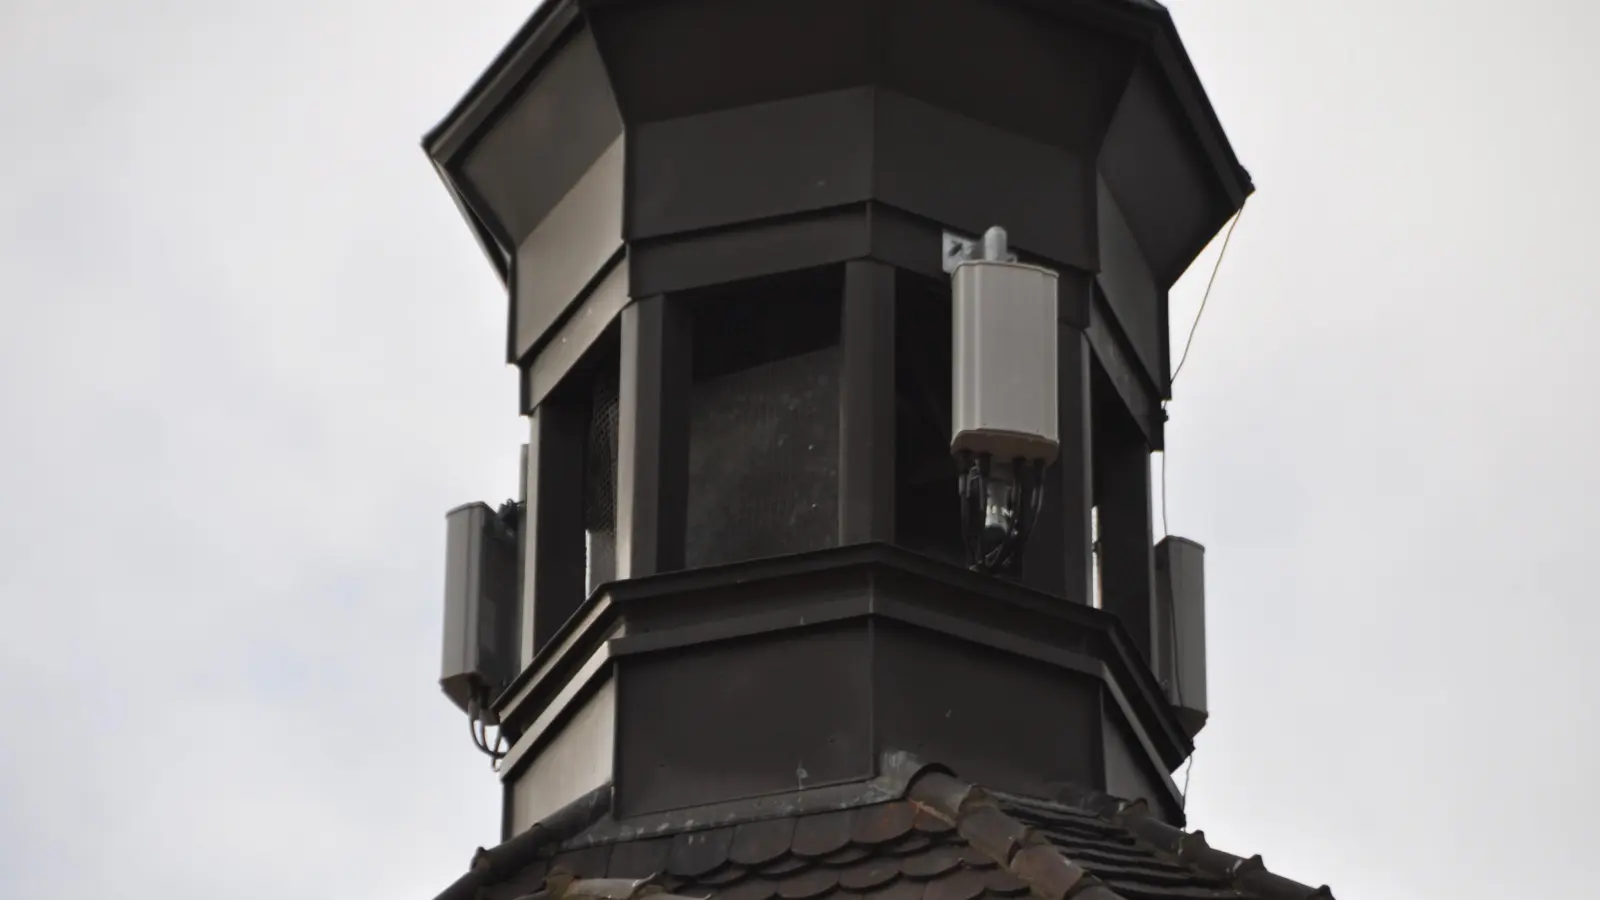 Mit dem Denkmalschutz vereinbar? An den neuen Antennen am Oberen Torturm scheiden sich die Geister. (Foto: Wolfgang Grebenhof)